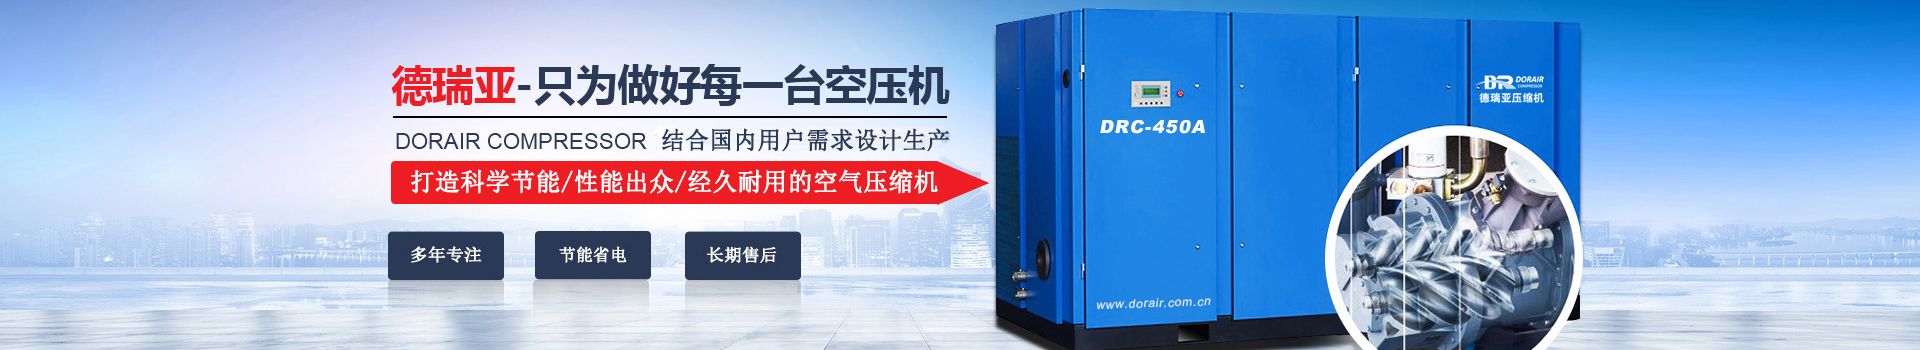 德瑞亞空壓機，中國高品質空壓機倡導者